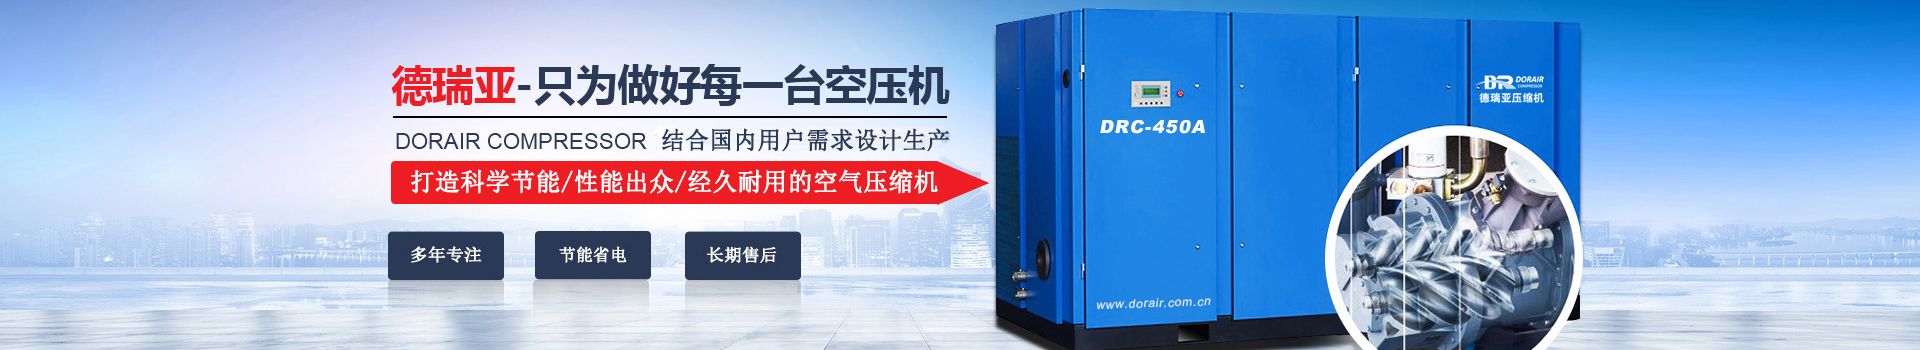 德瑞亞空壓機，中國高品質空壓機倡導者